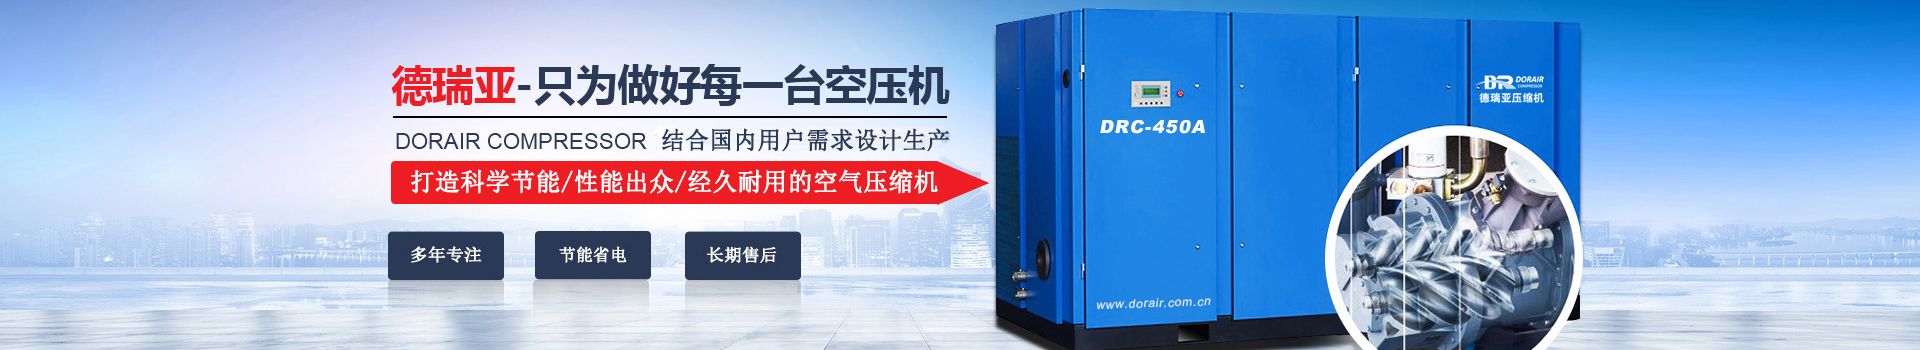 德瑞亞空壓機，中國高品質空壓機倡導者